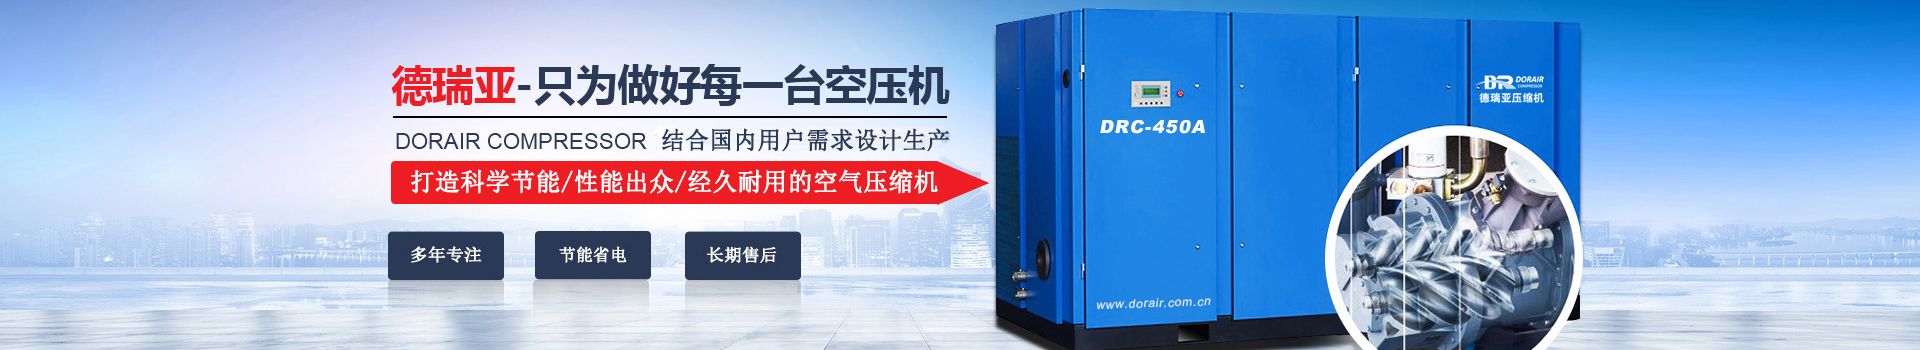 德瑞亞空壓機，中國高品質空壓機倡導者